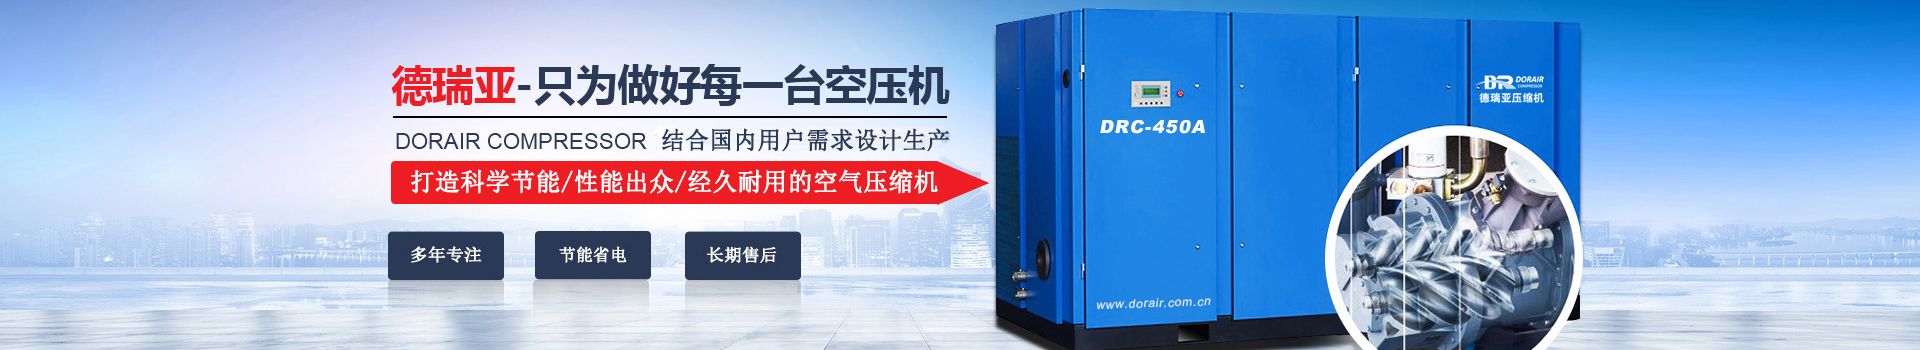 德瑞亞空壓機，中國高品質空壓機倡導者